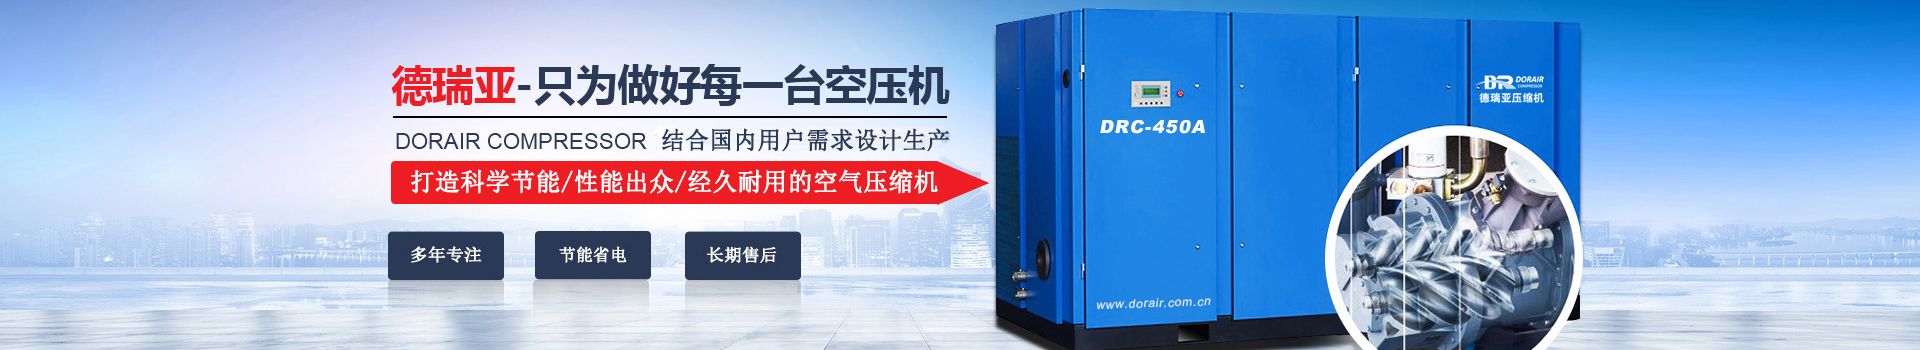 德瑞亞空壓機，中國高品質空壓機倡導者